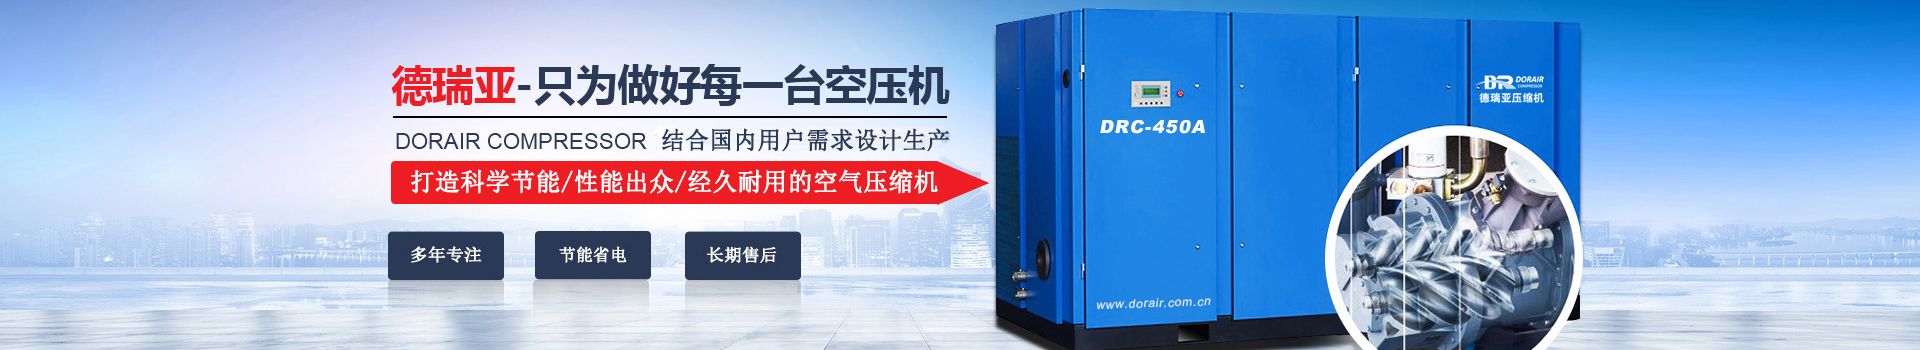 德瑞亞空壓機，中國高品質空壓機倡導者